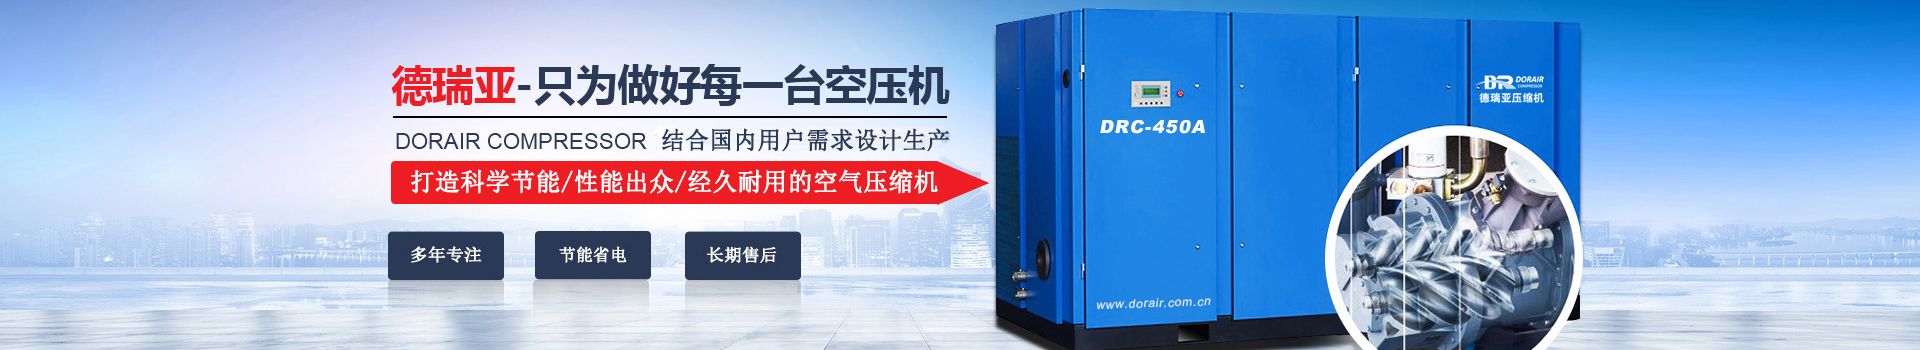 德瑞亞空壓機，中國高品質空壓機倡導者